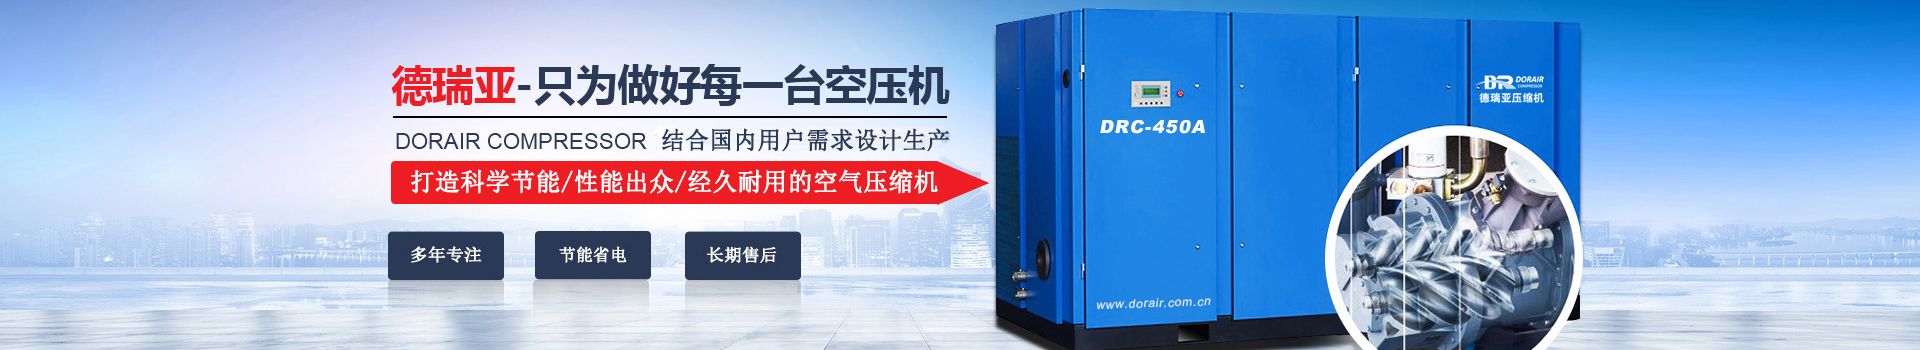 德瑞亞空壓機，中國高品質空壓機倡導者